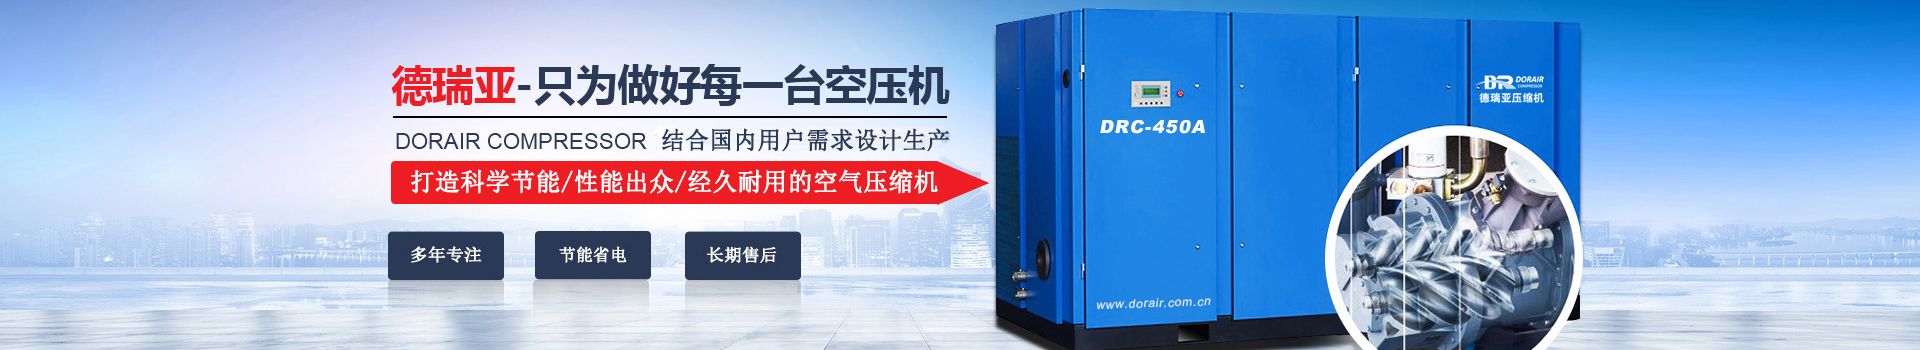 德瑞亞空壓機，中國高品質空壓機倡導者